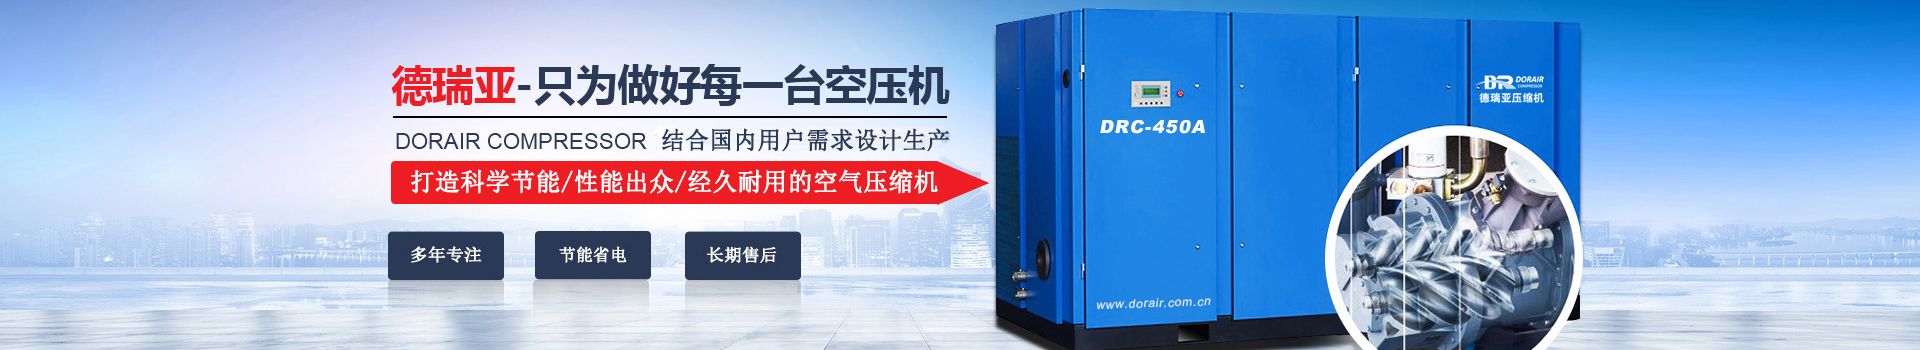 德瑞亞空壓機，中國高品質空壓機倡導者